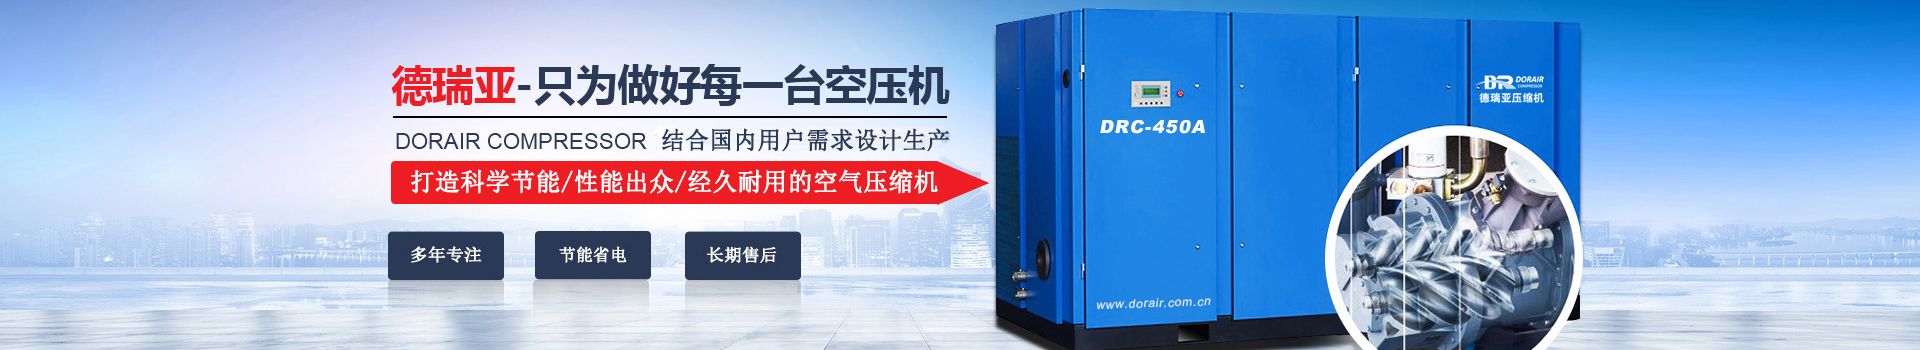 德瑞亞空壓機，中國高品質空壓機倡導者